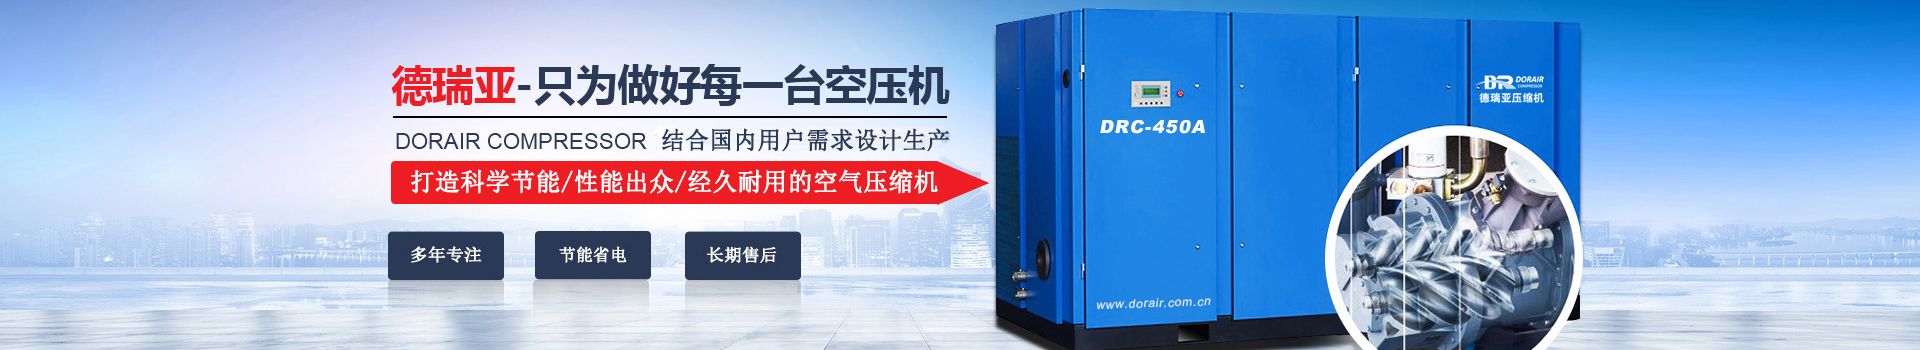 德瑞亞空壓機，中國高品質空壓機倡導者